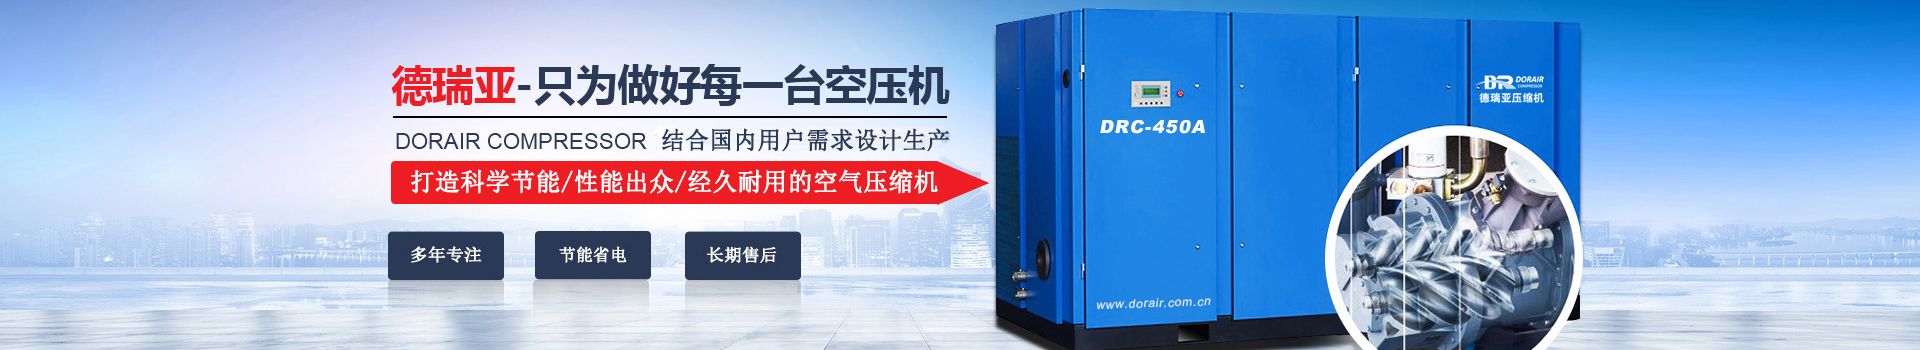 德瑞亞空壓機，中國高品質空壓機倡導者